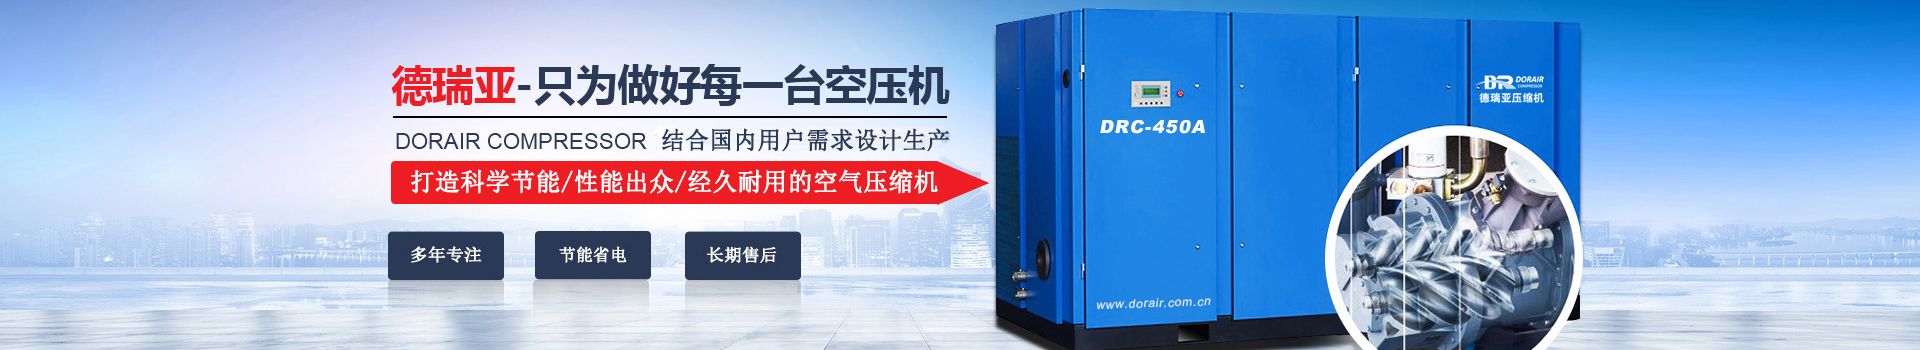 德瑞亞空壓機，中國高品質空壓機倡導者